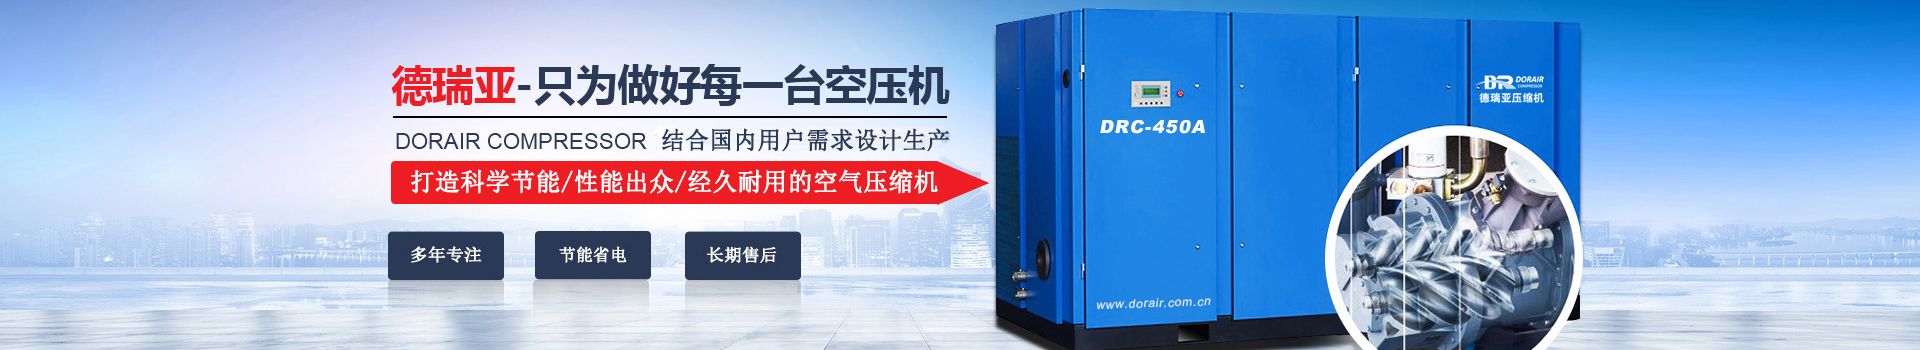 德瑞亞空壓機，中國高品質空壓機倡導者